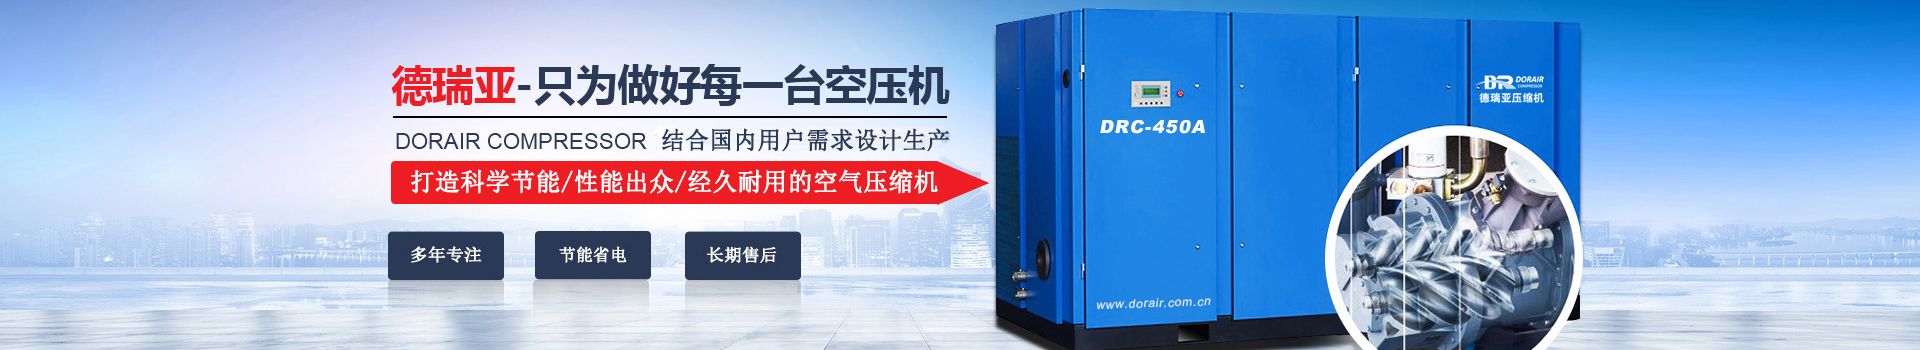 德瑞亞空壓機，中國高品質空壓機倡導者